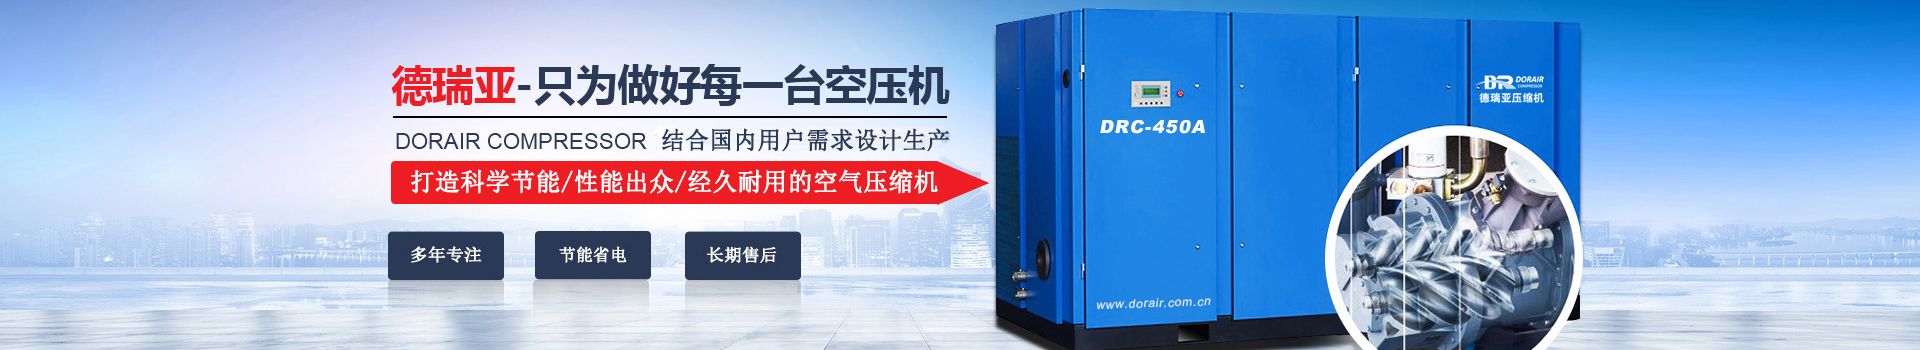 德瑞亞空壓機，中國高品質空壓機倡導者